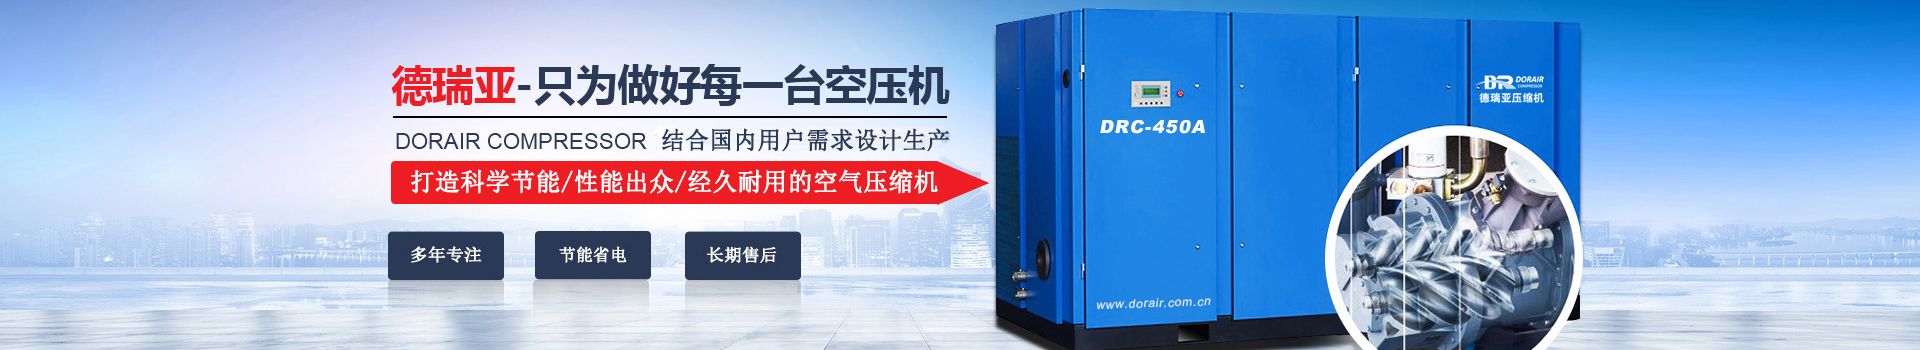 德瑞亞空壓機，中國高品質空壓機倡導者